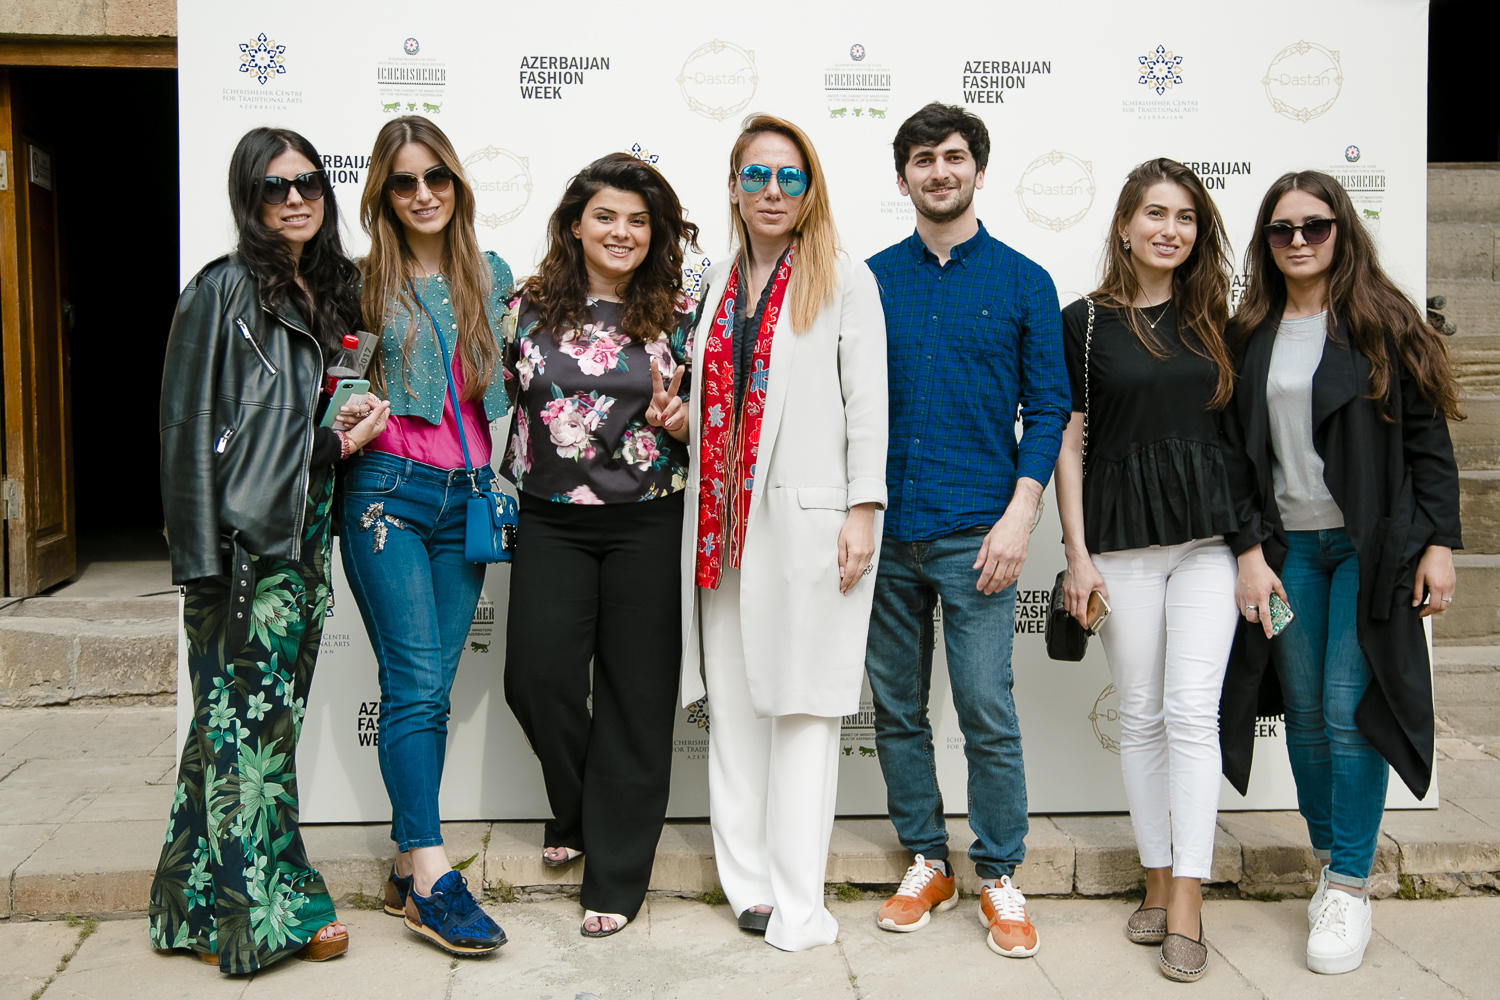 Bakıda beşinci "Azerbaijan Fashion Week" keçirilir (FOTO)